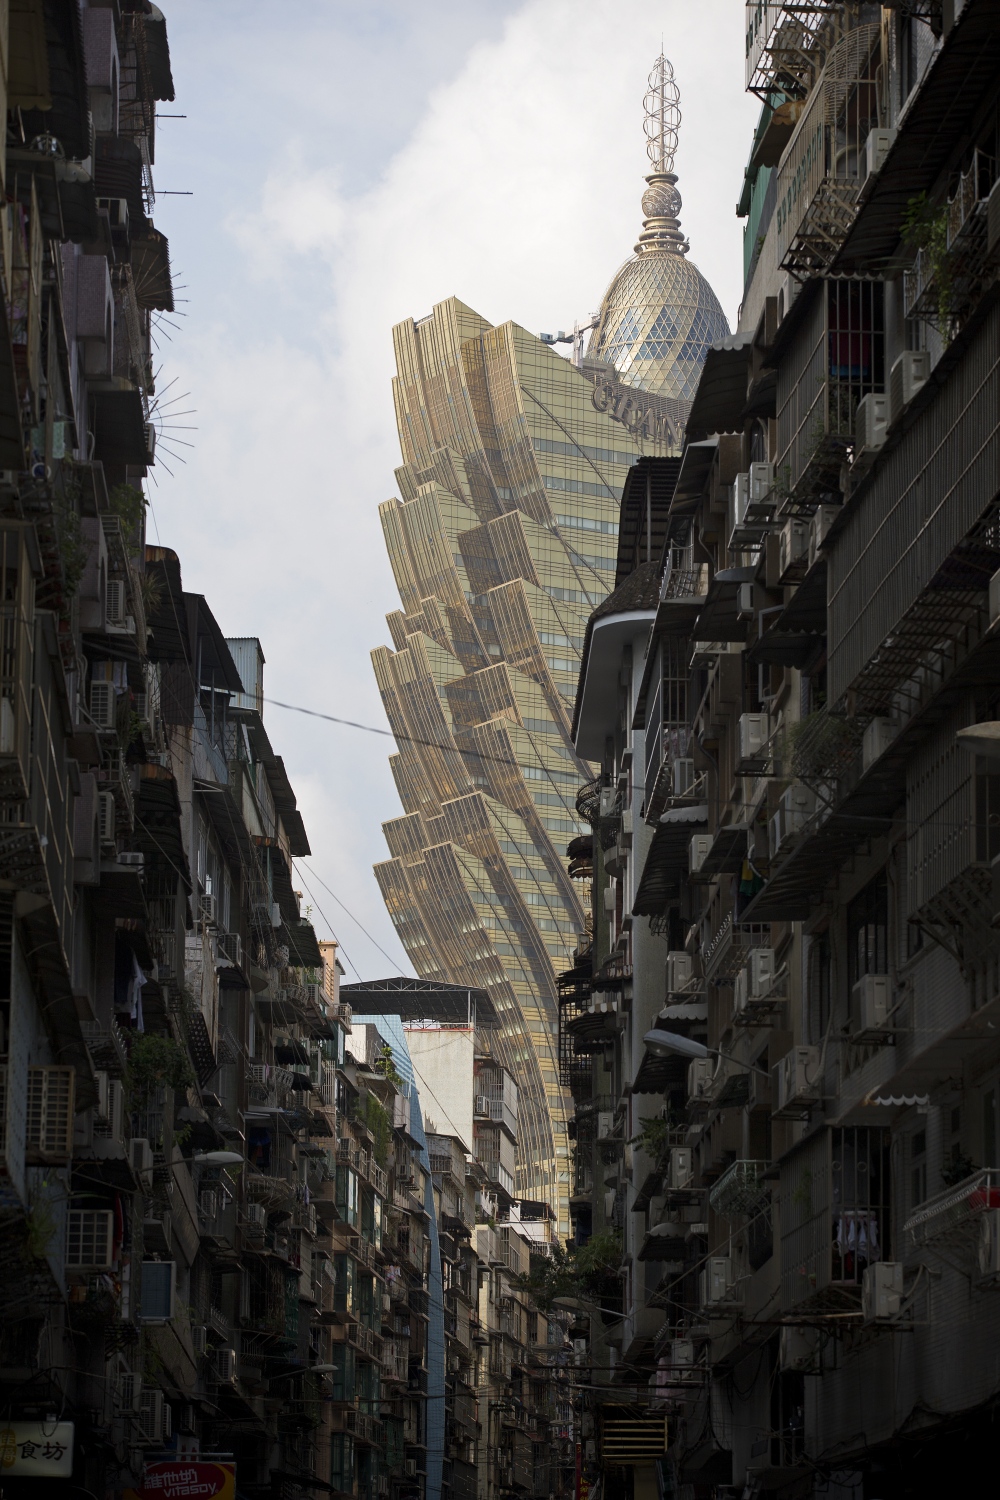 Multibillion-dollar Macau: a city of glitz and grit - 